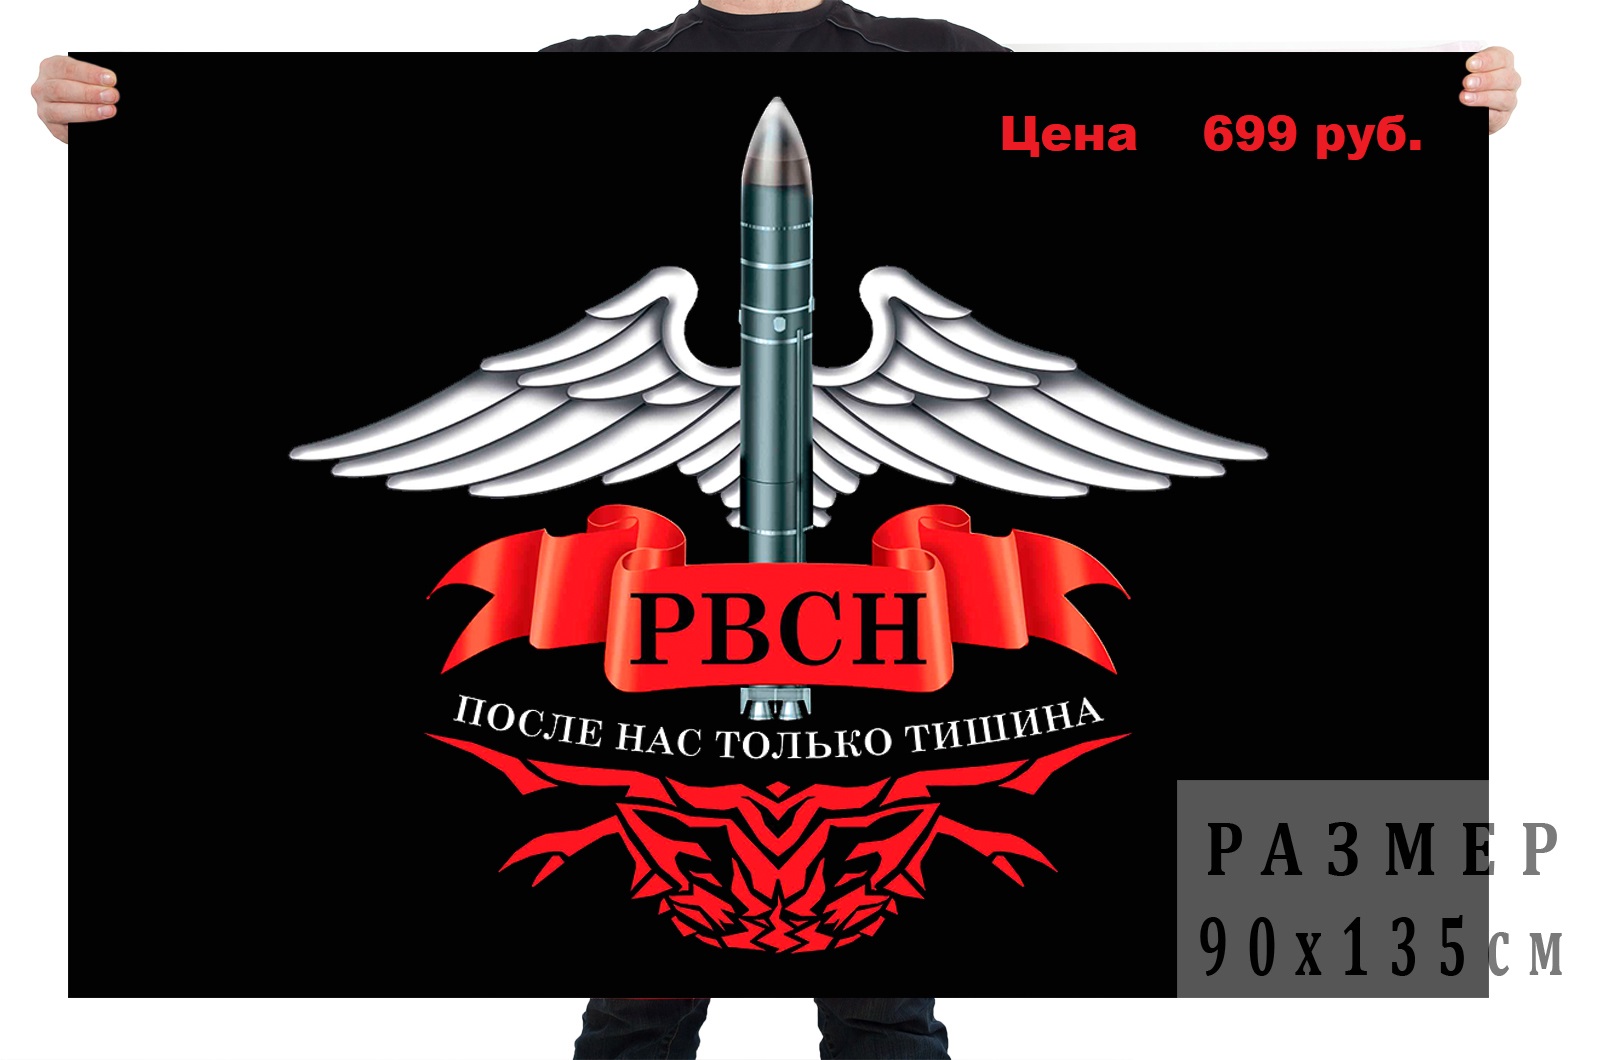 Флаг Ракетных войск стратегического назначения с девизом по цене 699 рублей в розницу!